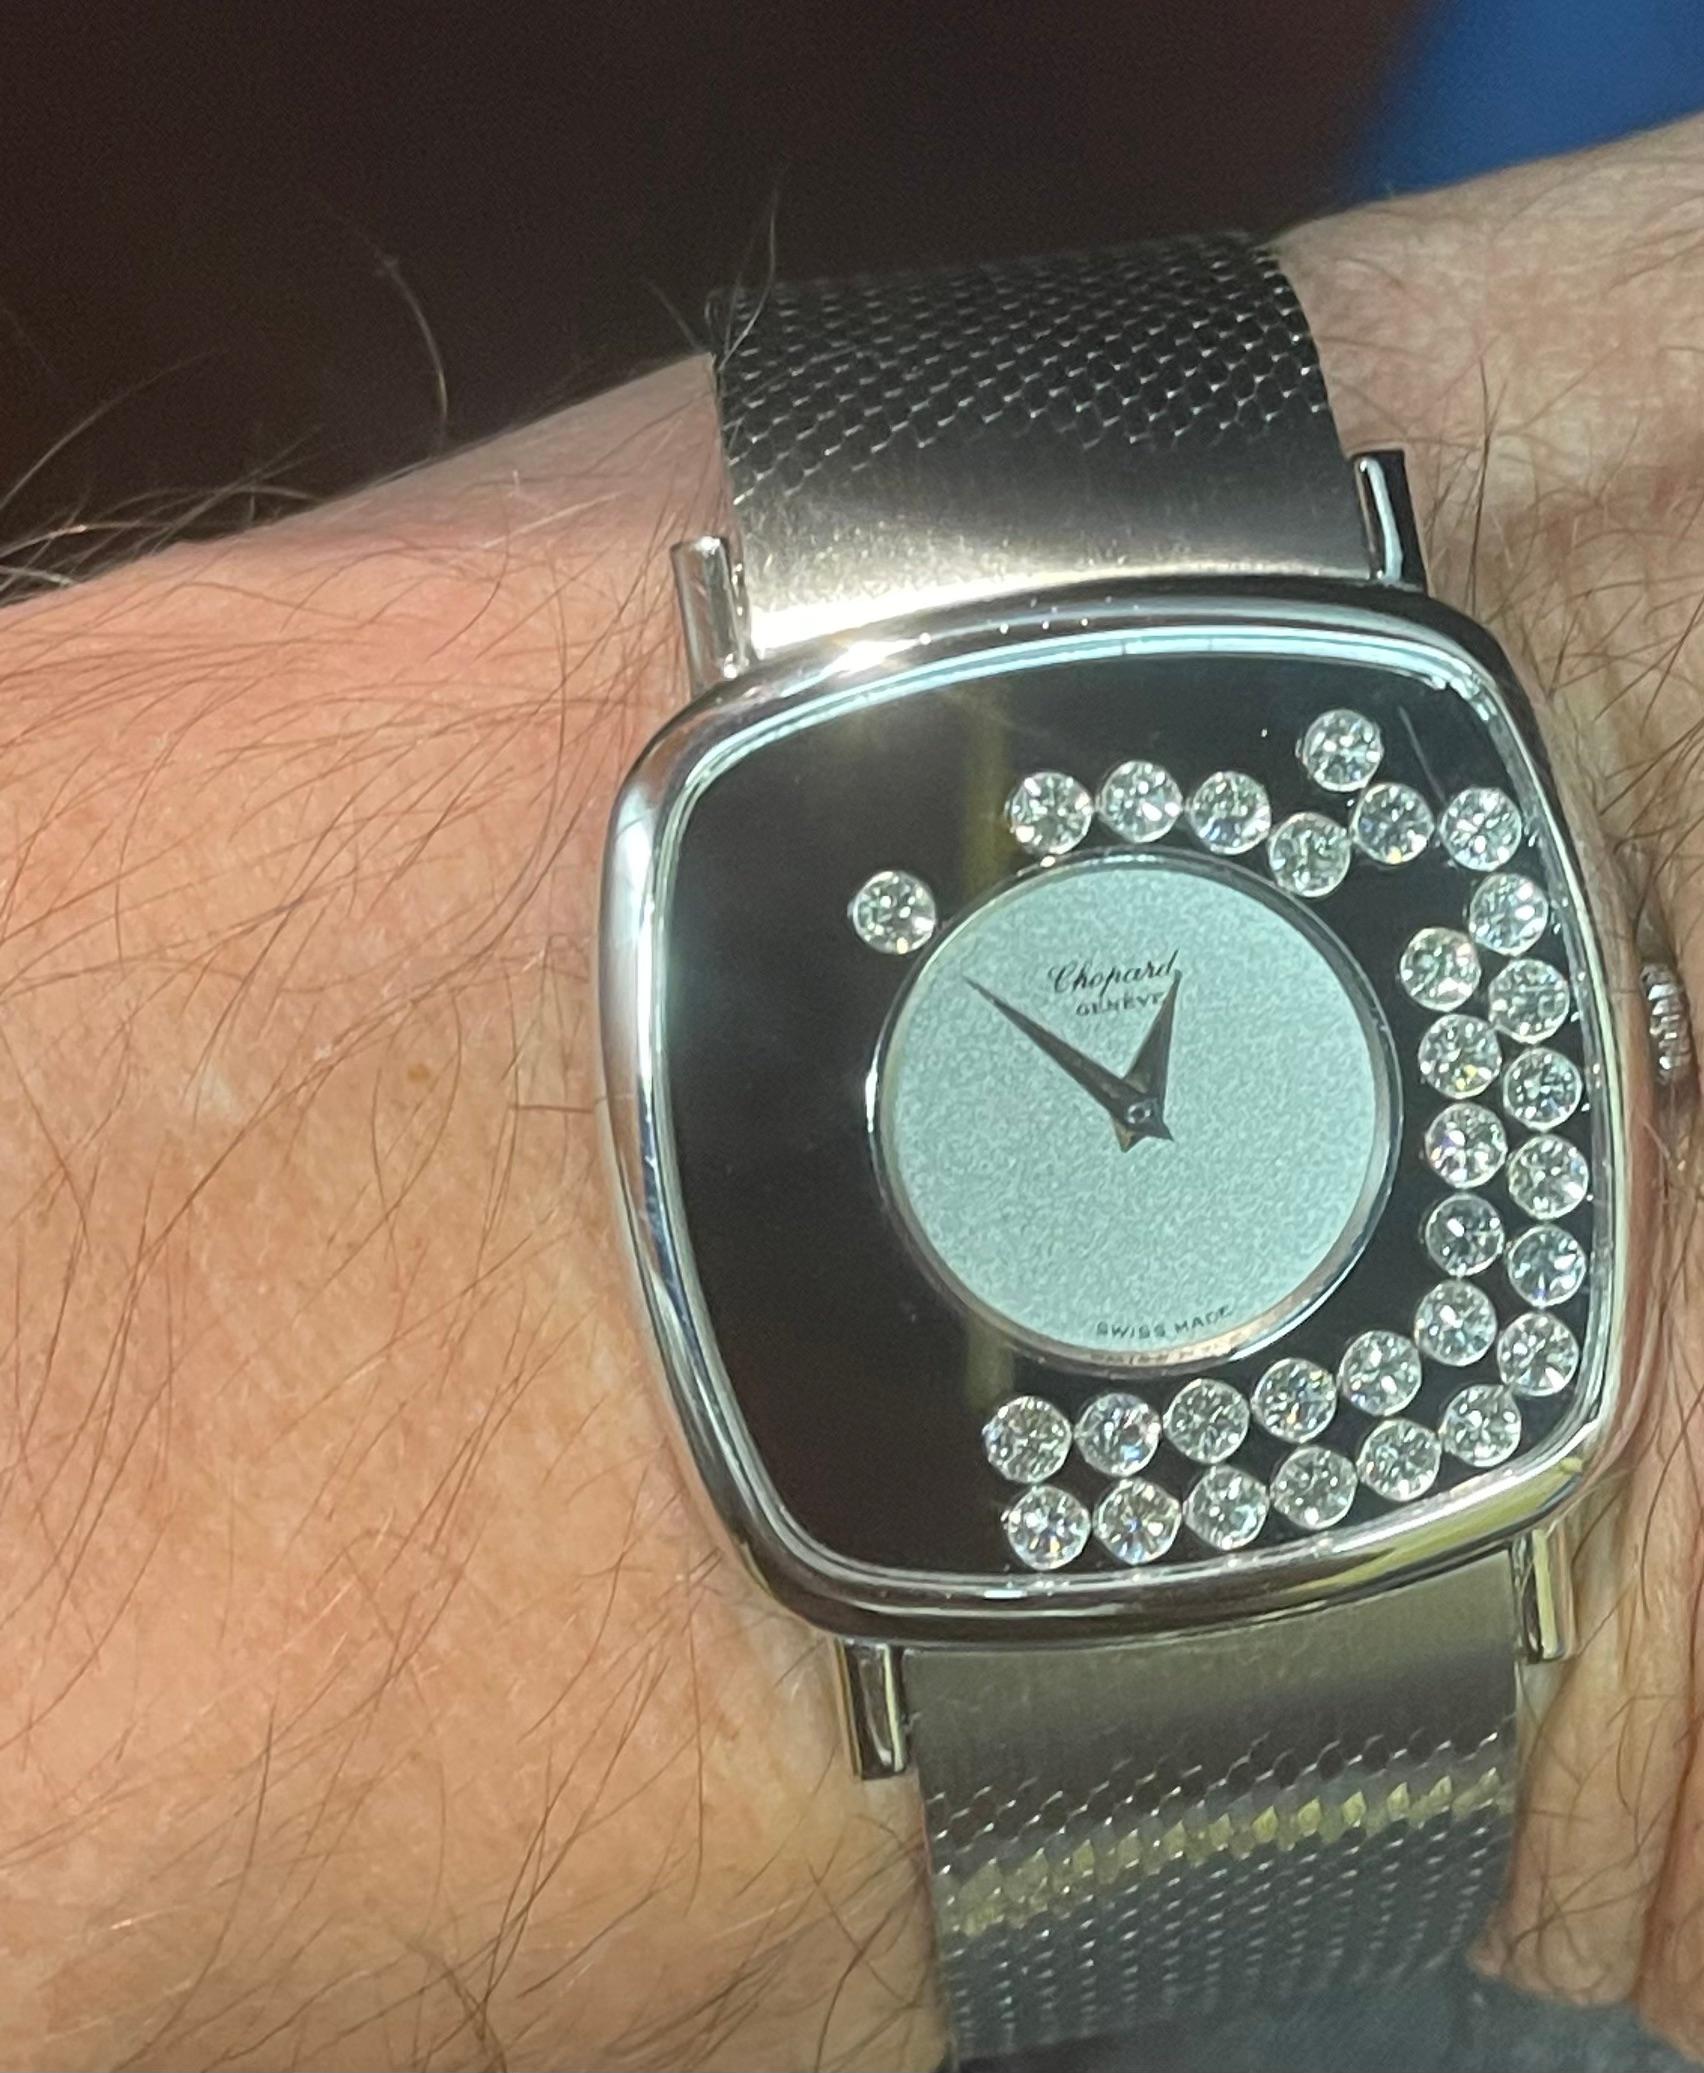 ce design a été le plus grand succès de l'histoire de Chopard. designer
ronald kurowski a été inspiré par les gouttes d'eau qui scintillent au soleil près d'une chute d'eau et a décidé de concevoir une montre pour homme avec des diamants mobiles,